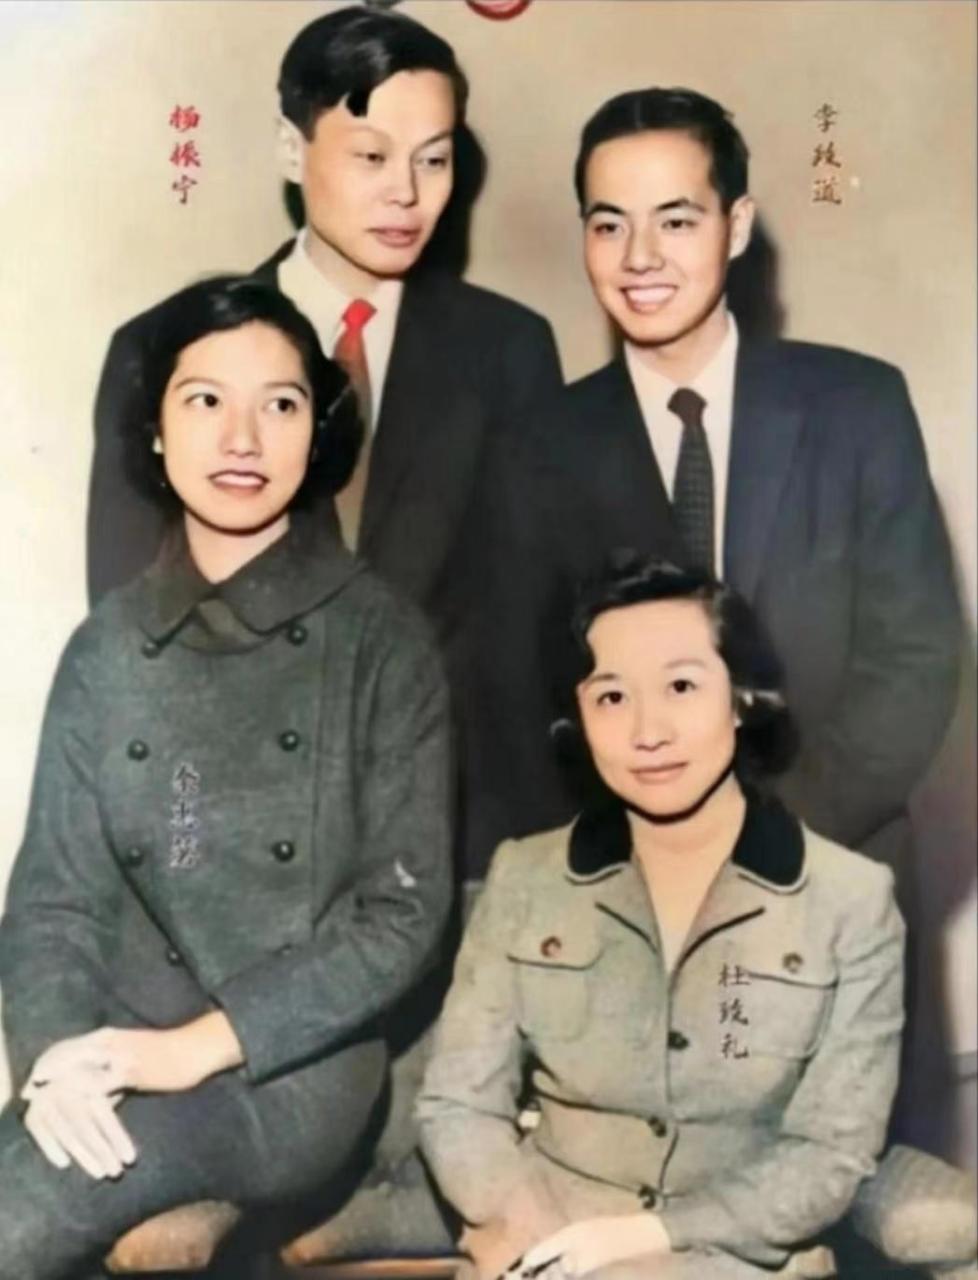 杨振宁夫妇与李政道夫妇年轻时候的合影,当时他们正值风华正茂,也是